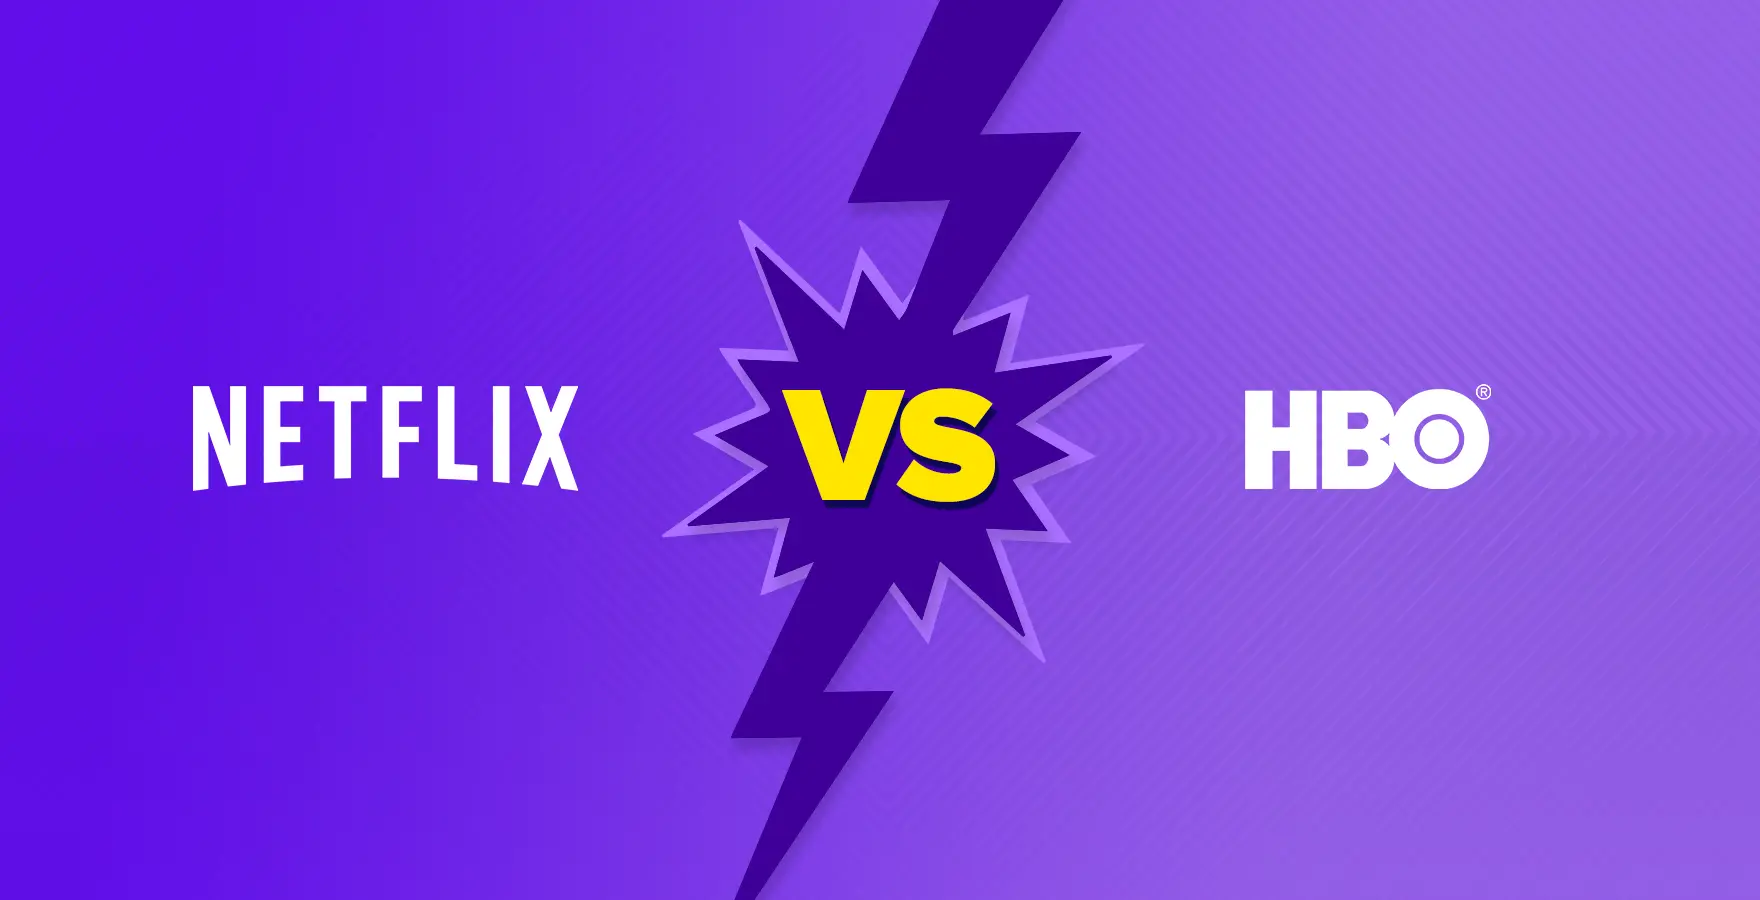 Netflix-vs.-HBOV2